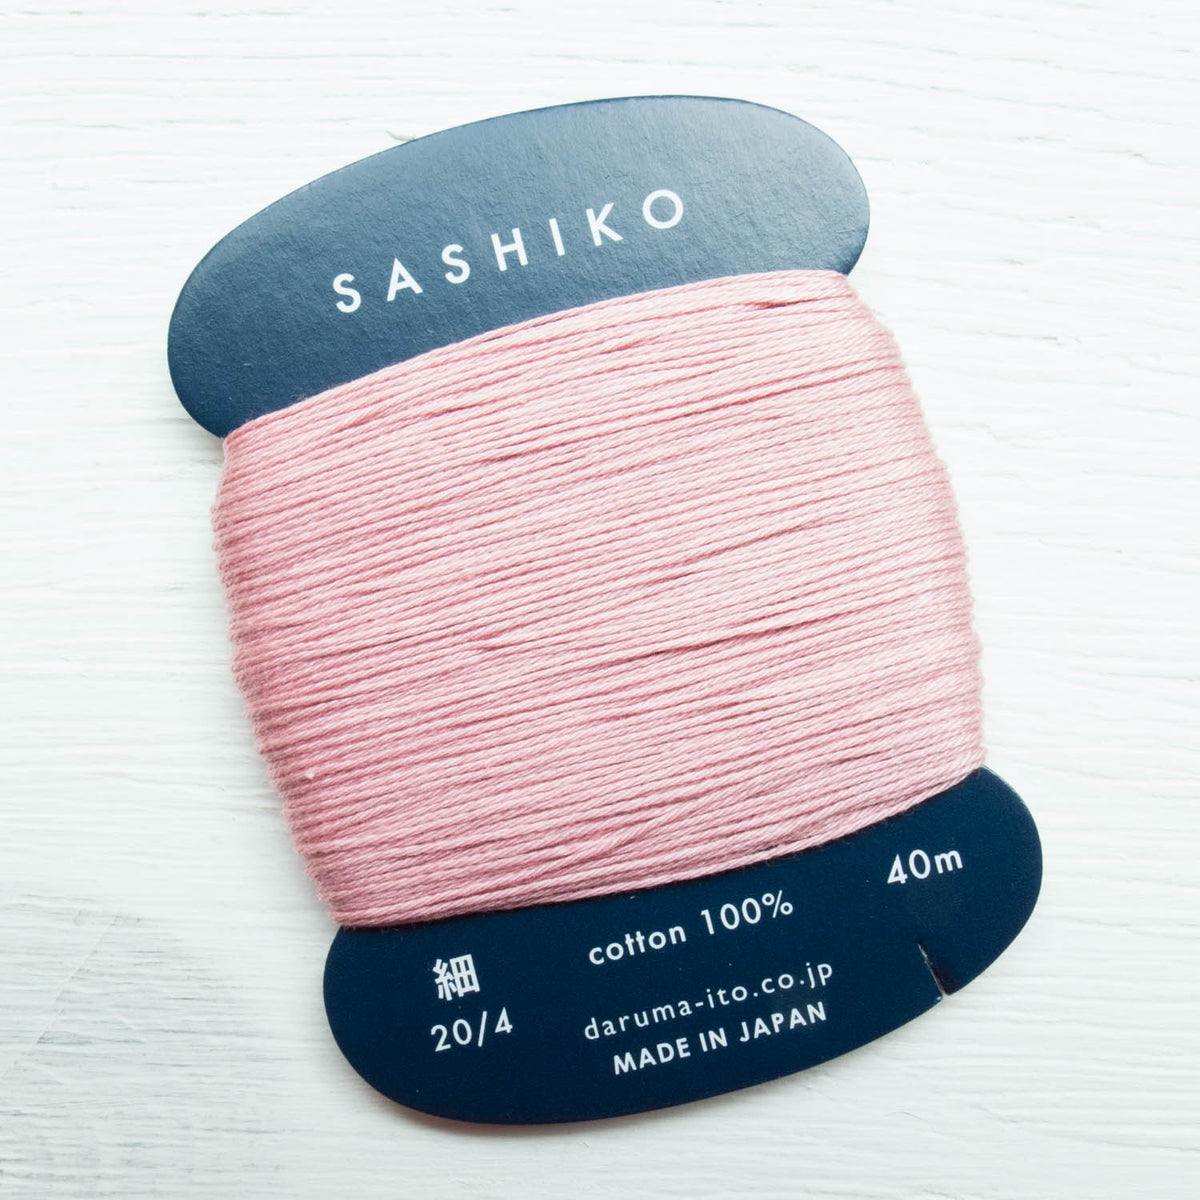 ORIM - Daruma - Sashiko Cotton Thread 20/6 - 0211 - Rose Pink